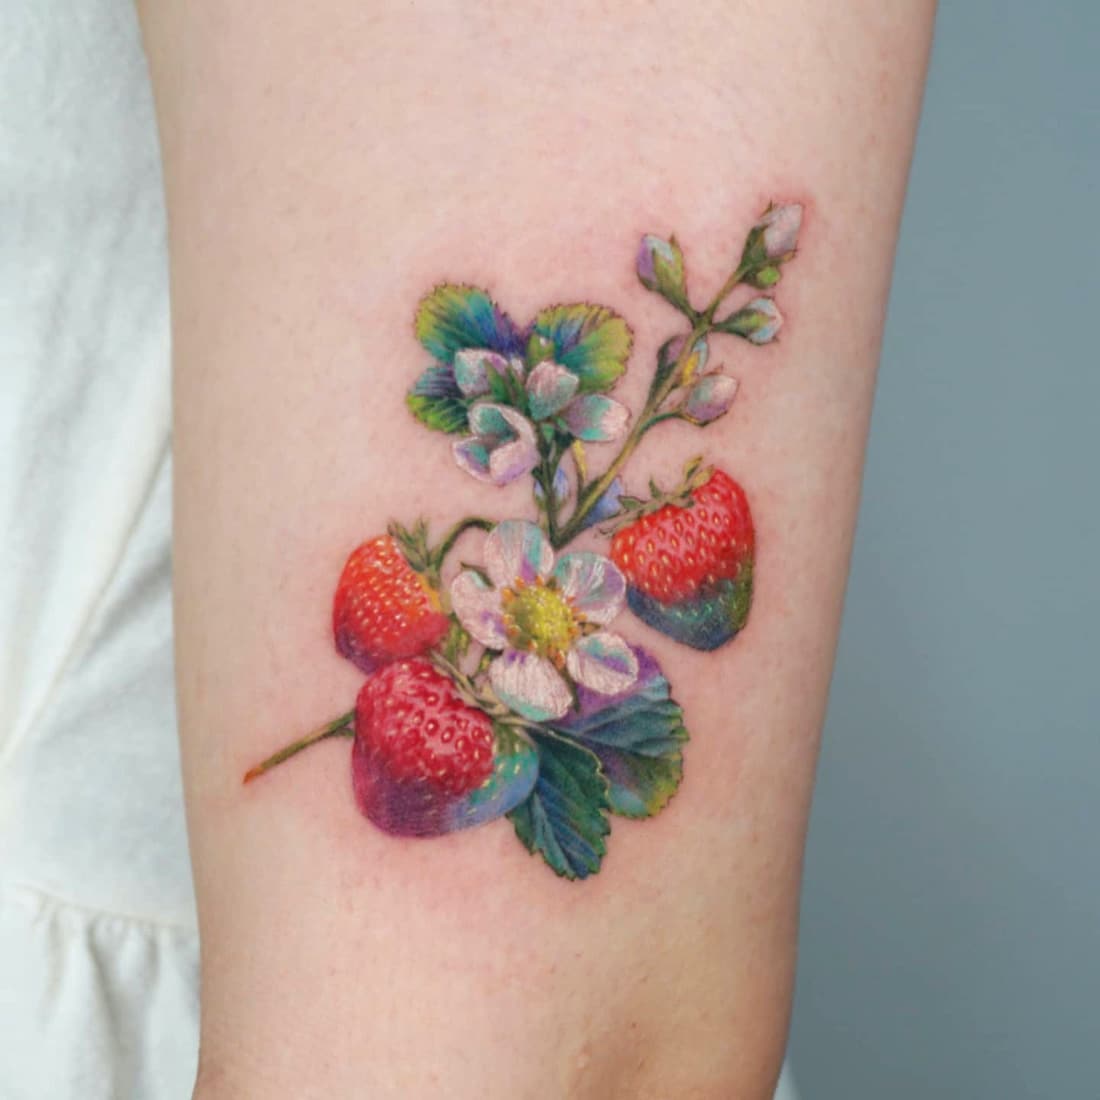   Fantastique tatouage de fraise